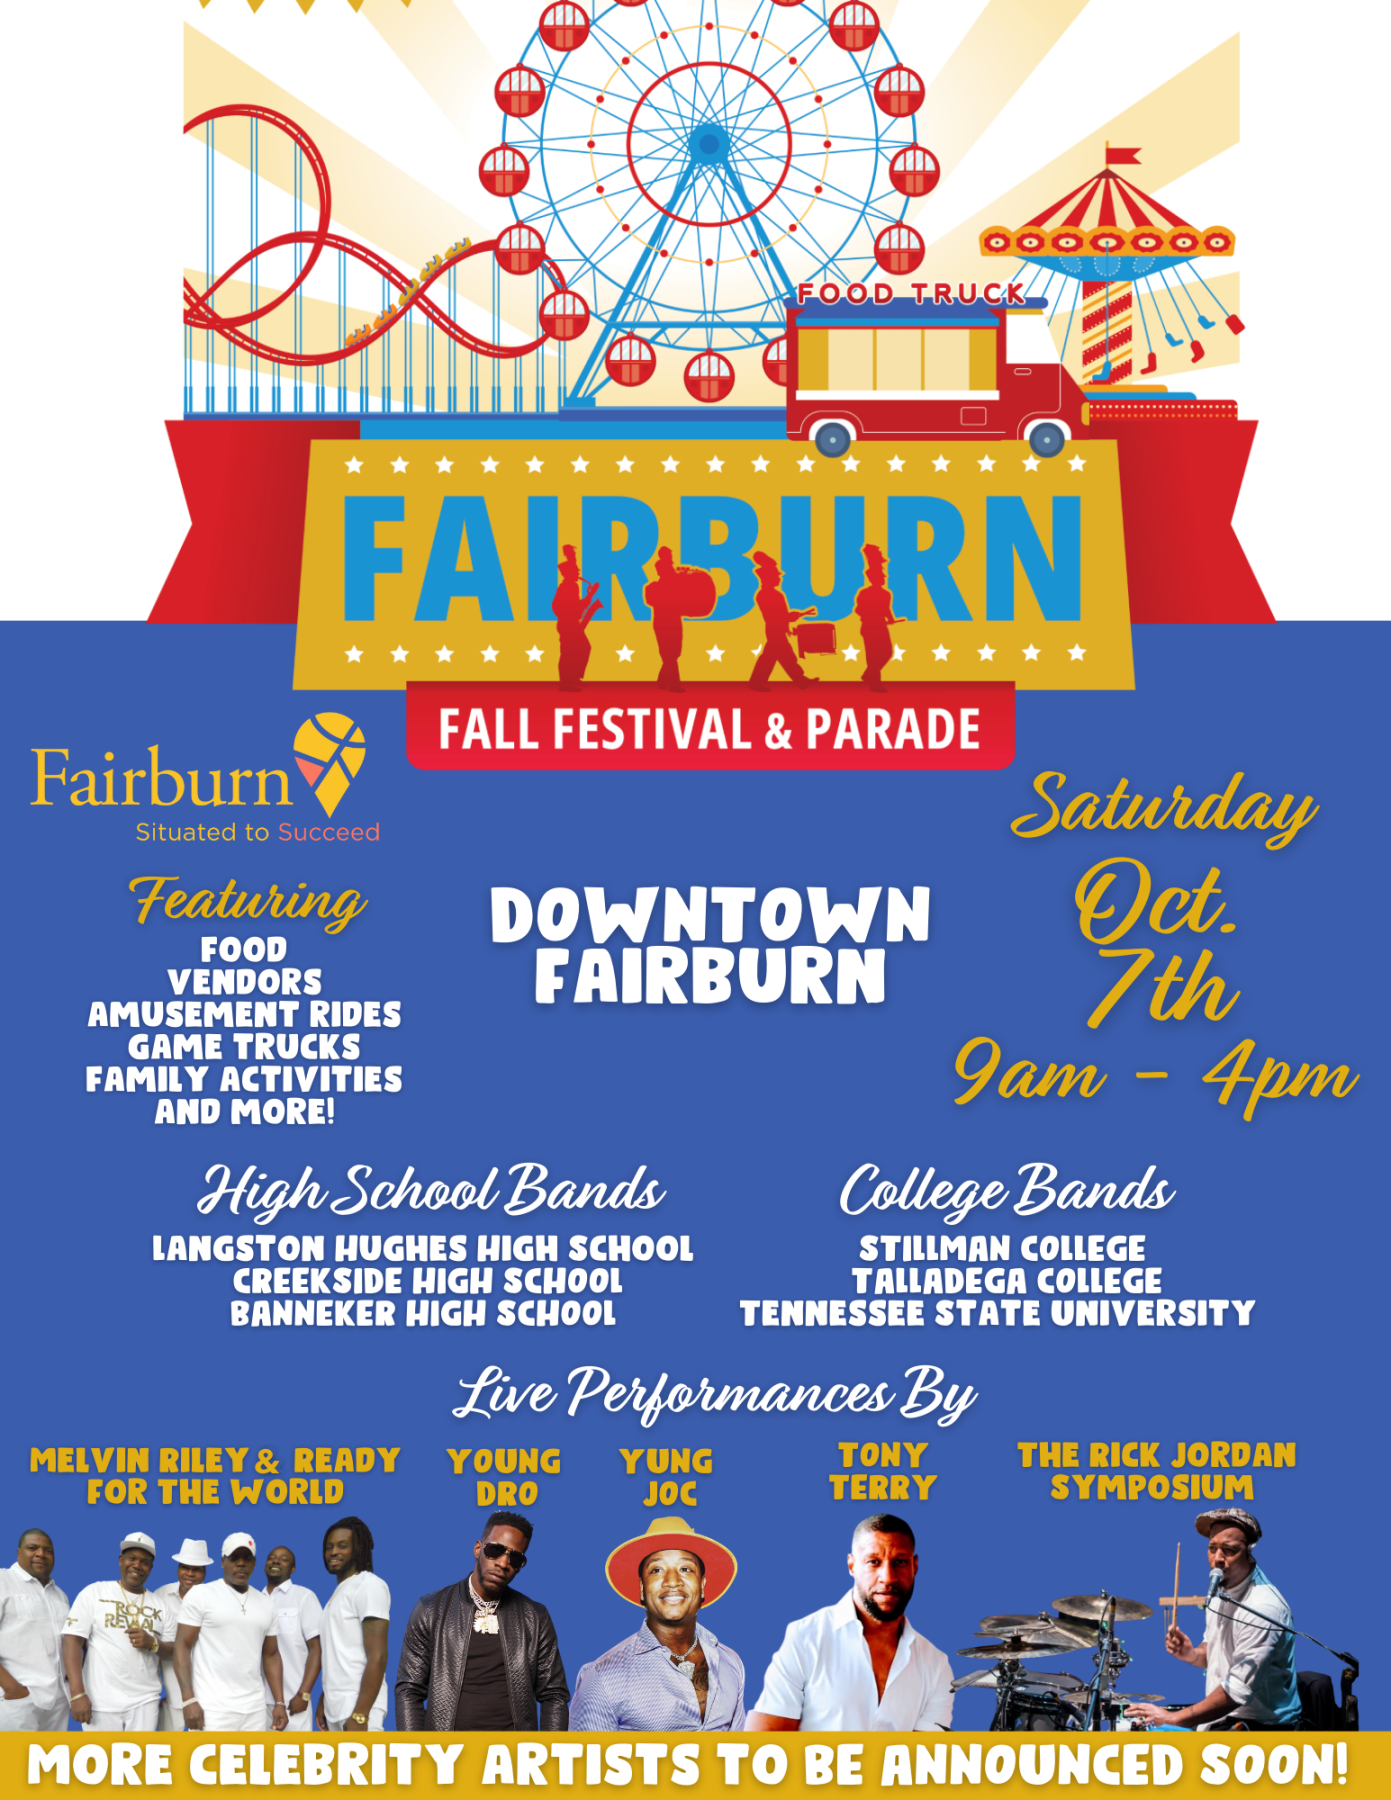 City of Fairburn, GA